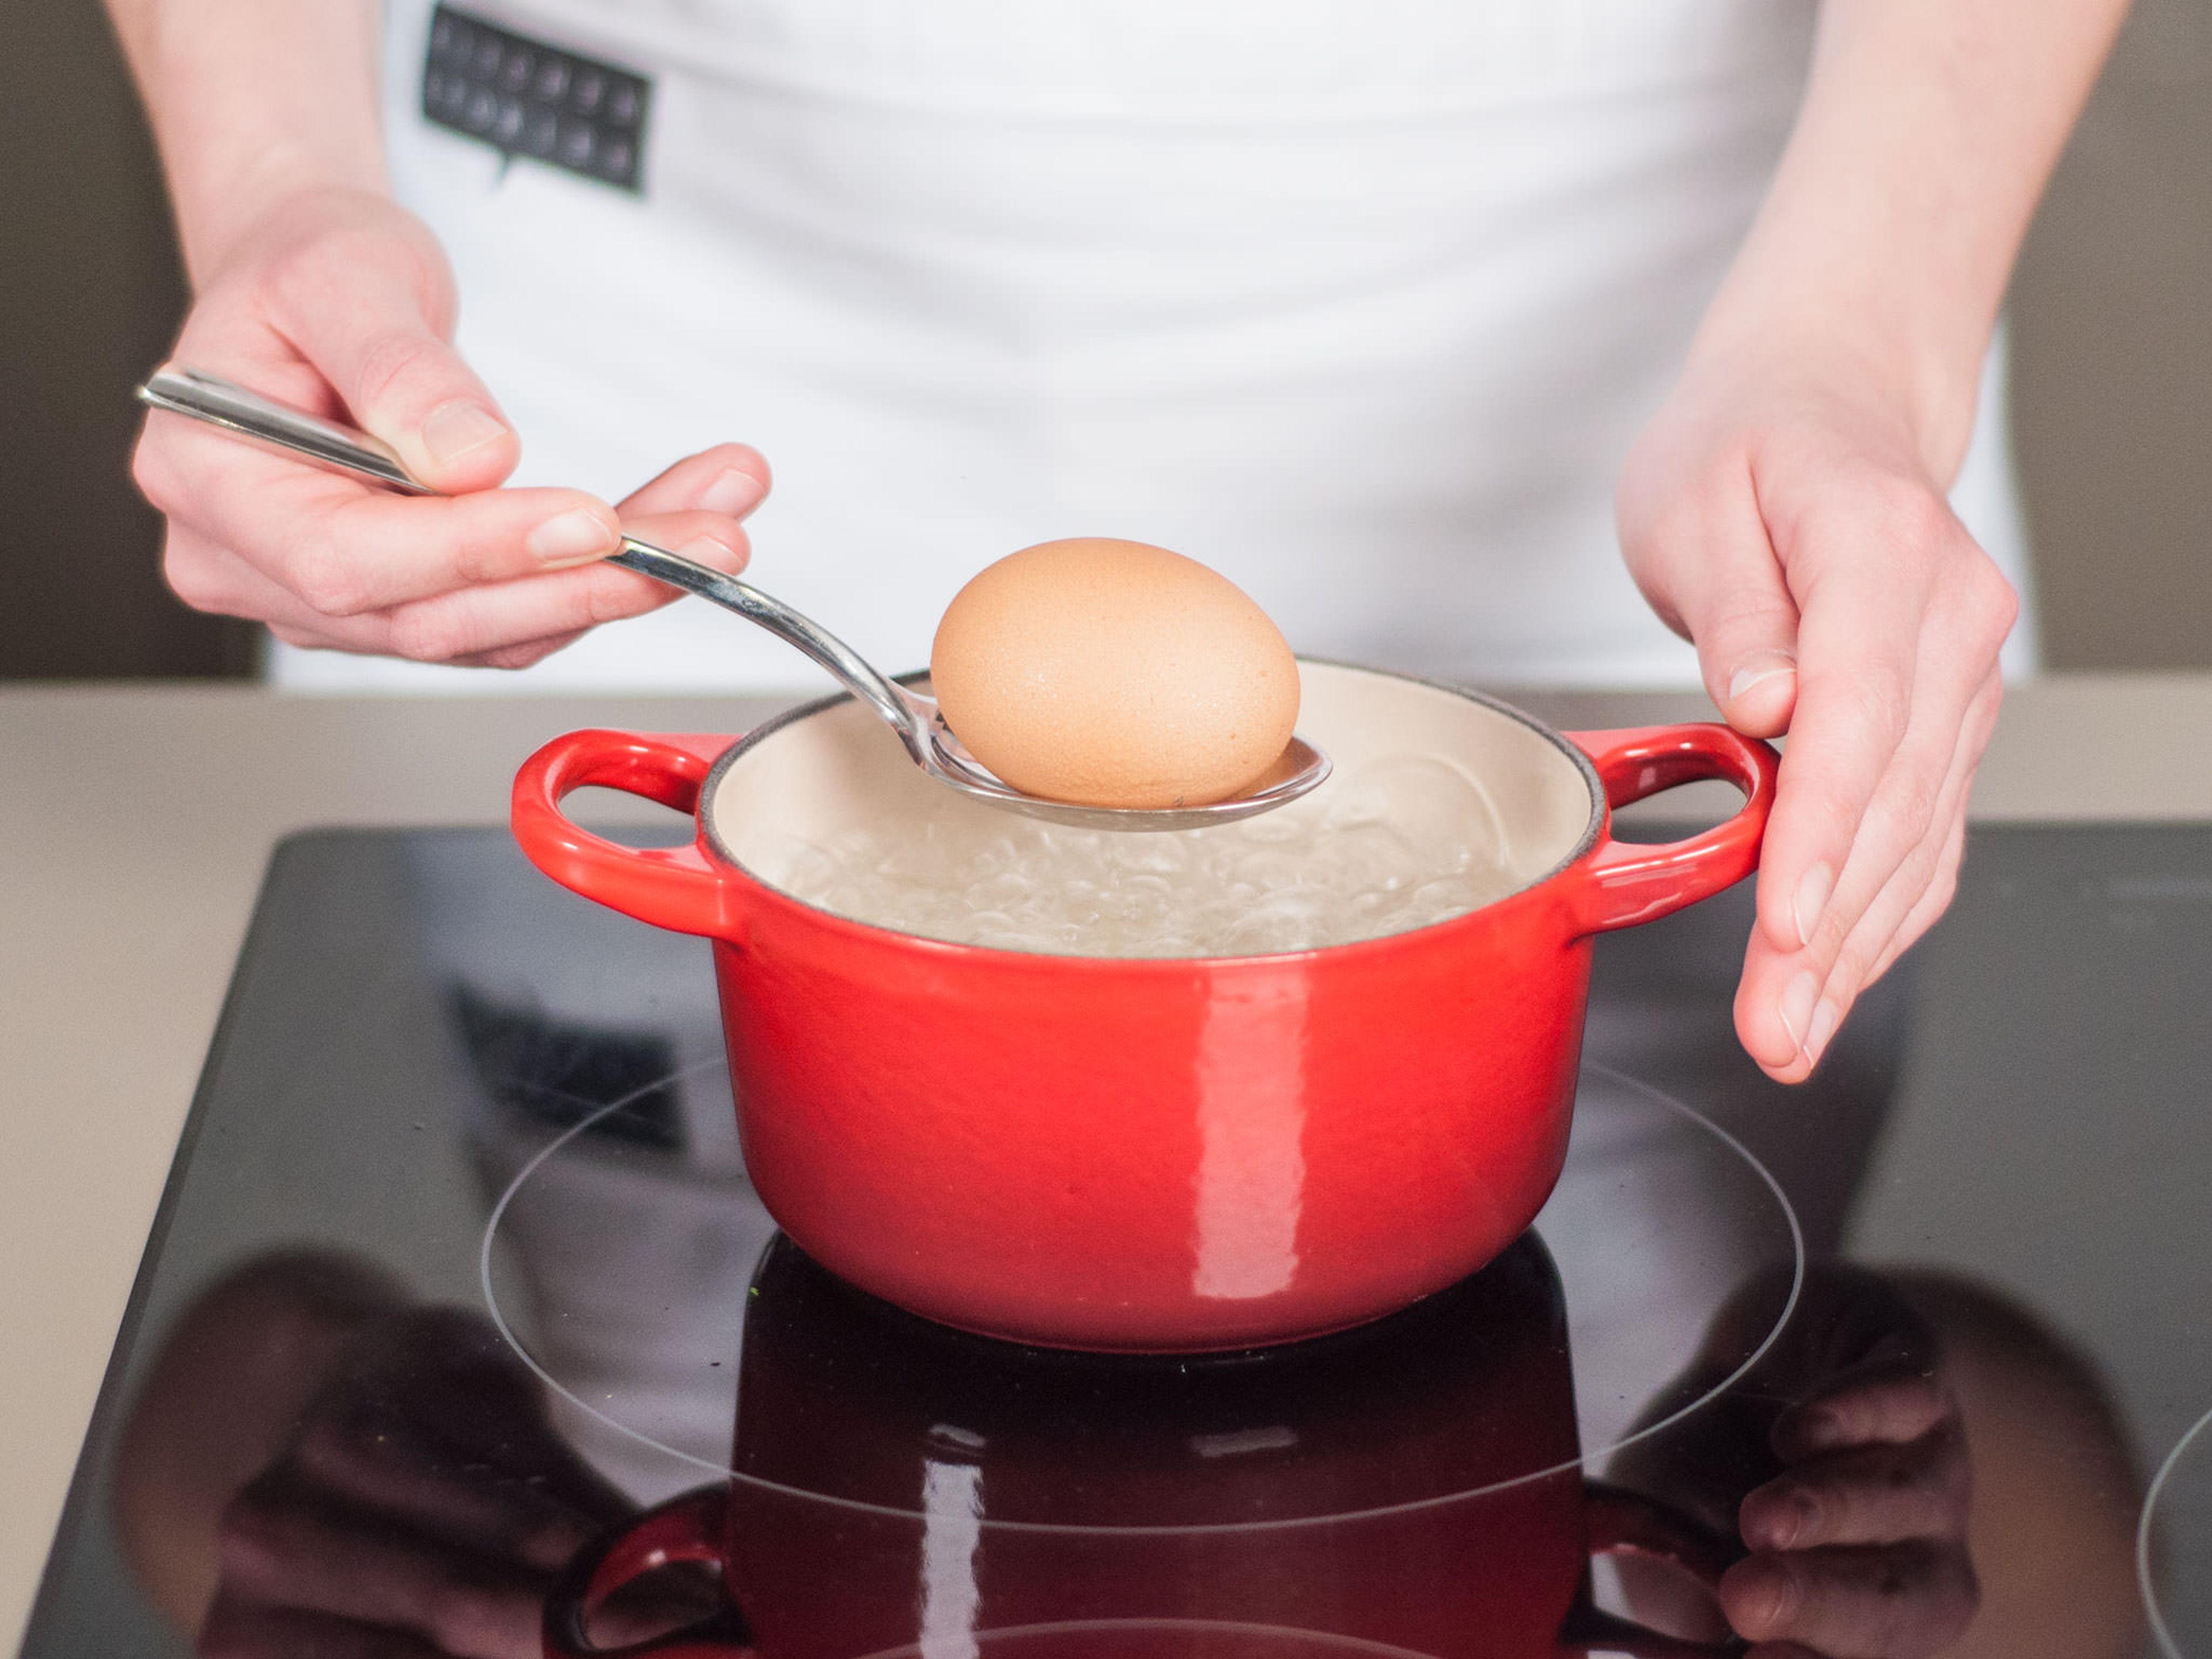 Wasser in einem Topf zum Kochen bringen. Ei in siedendem Wasser ca. 8 – 10 Min. kochen bis es hart ist. Aus dem Topf nehmen, unter kalten Wasser abschrecken, schälen und würfeln. Beiseitestellen.